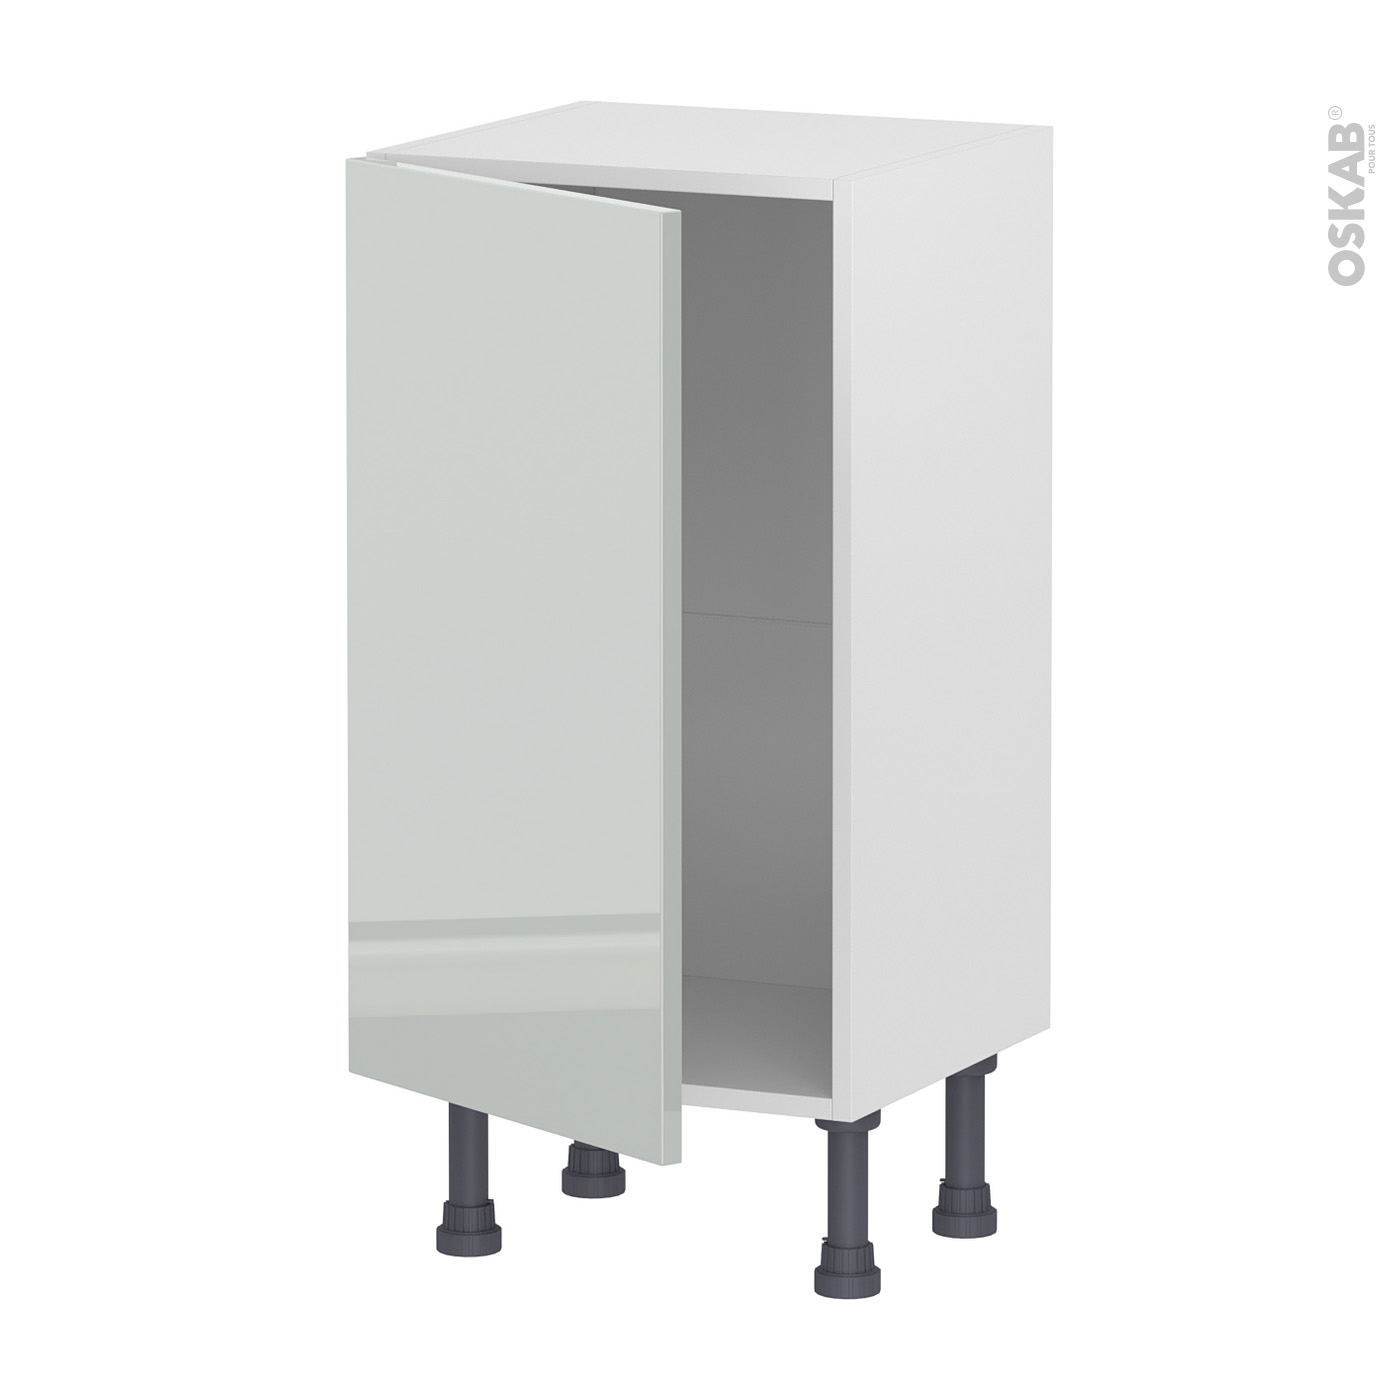 Meuble de cuisine Sous évier IVIA Gris 2 portes lessiviel-poubelle  coulissante L100 x H70 x P58 cm - Oskab